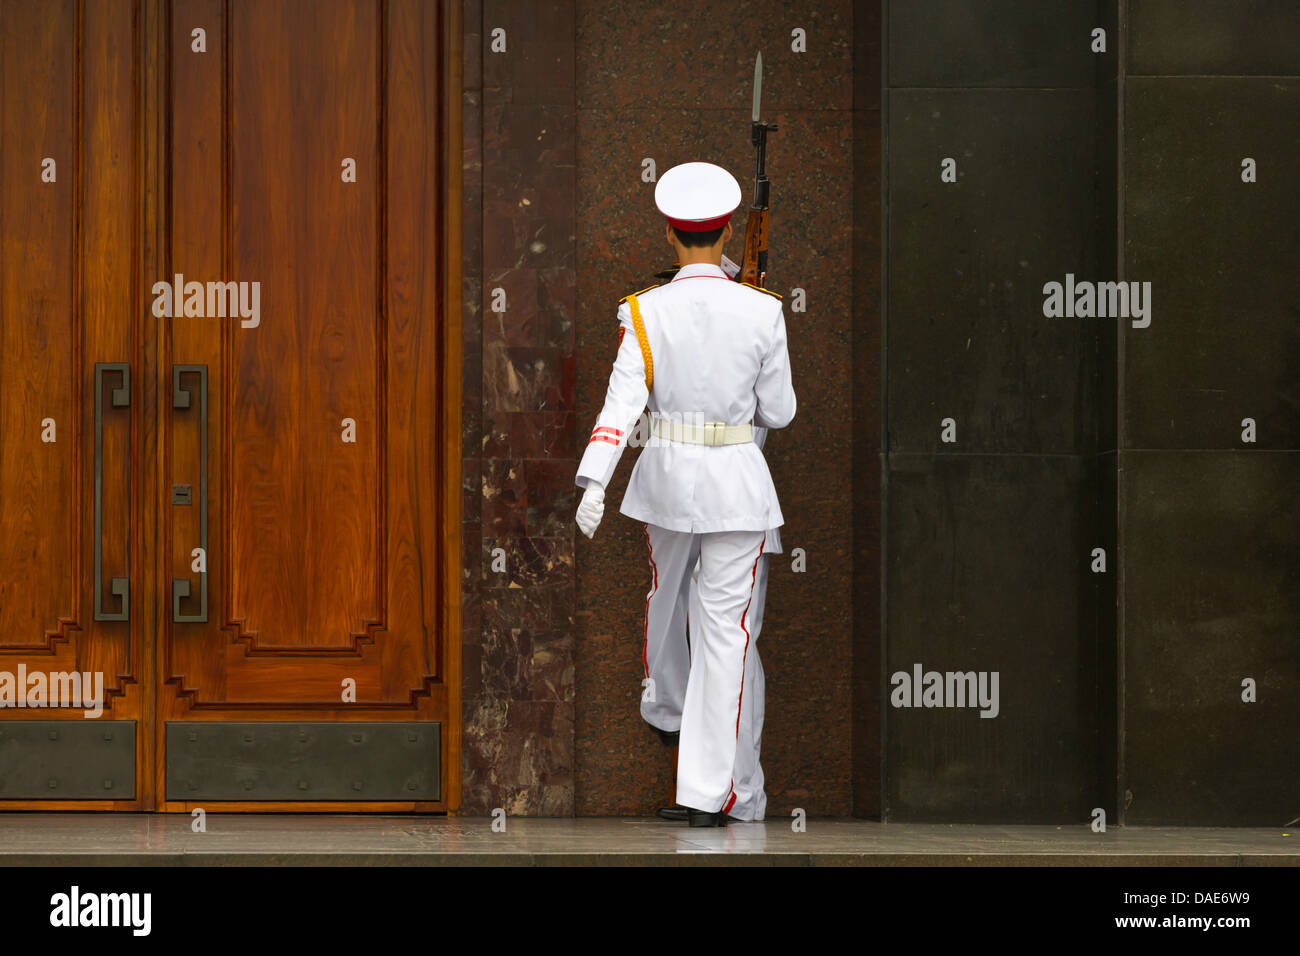 Changement de la garde à la mausolée de Ho Chi Minh à Hanoi, Vietnam Banque D'Images